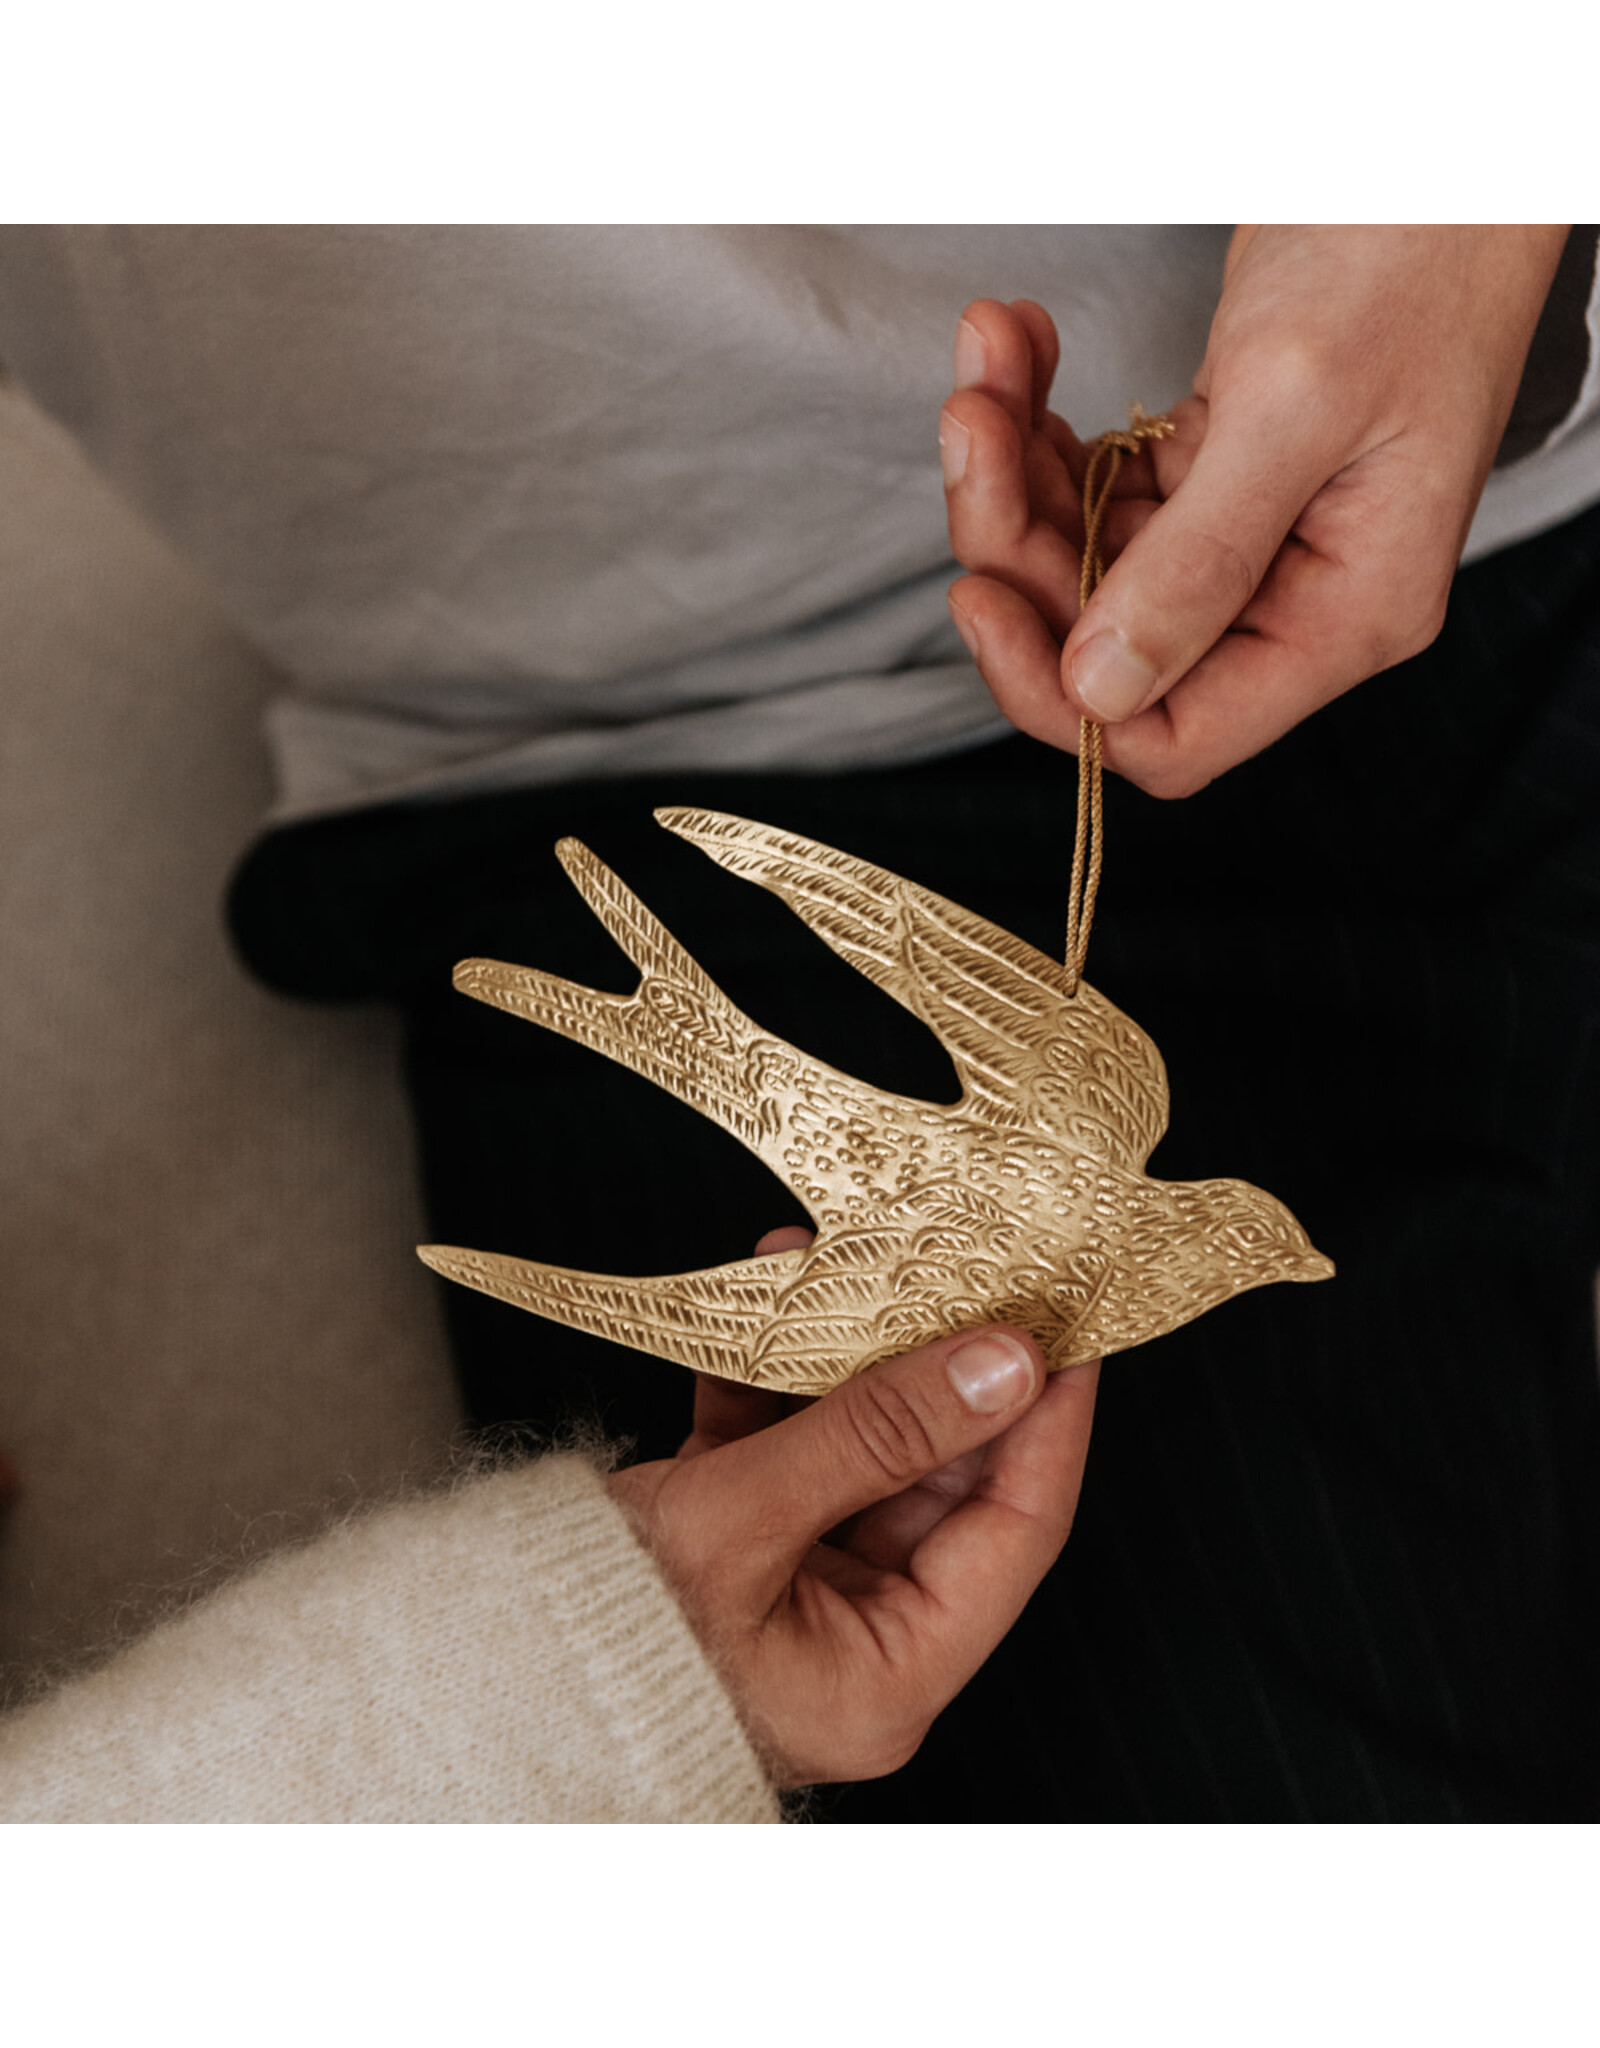 Ikpakjein Hanger Gouden Vogel - Veel moois toegewenst